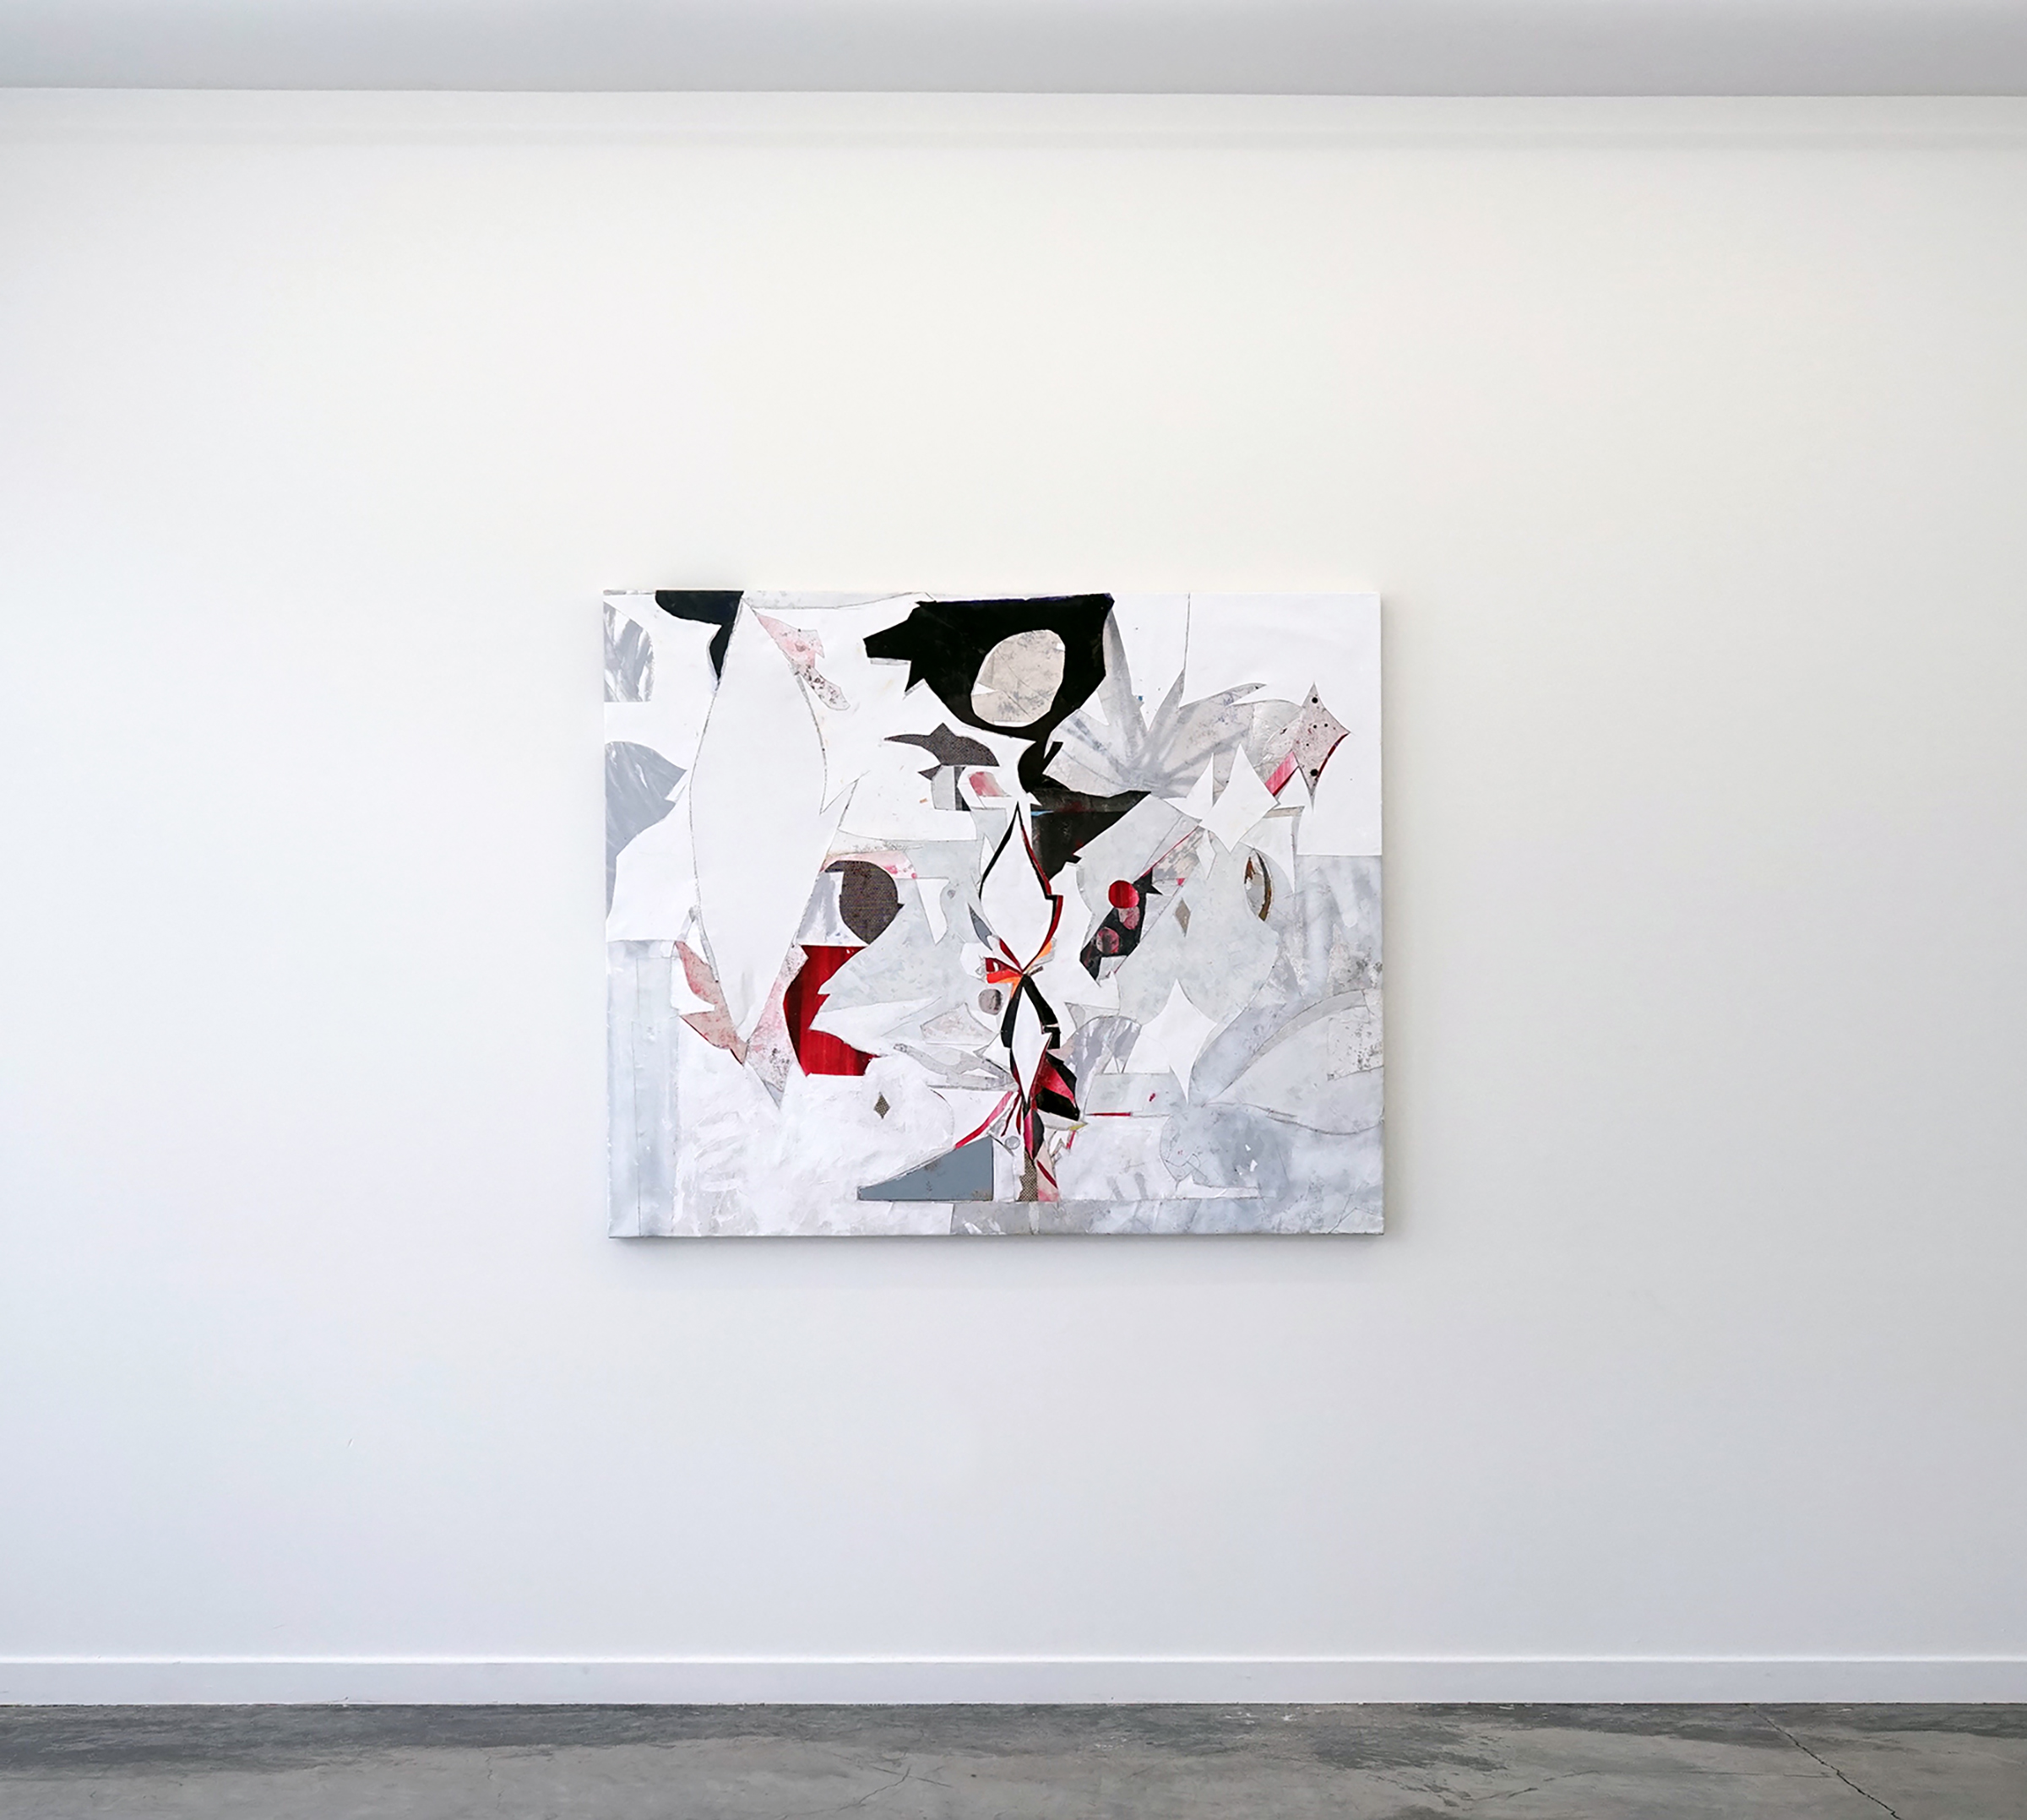   RYAN WALLACE   Lenakaeia 3 , enamel, acrylic, canvas, linen, aluminum, fiberglass, 48" x 58", 2017 